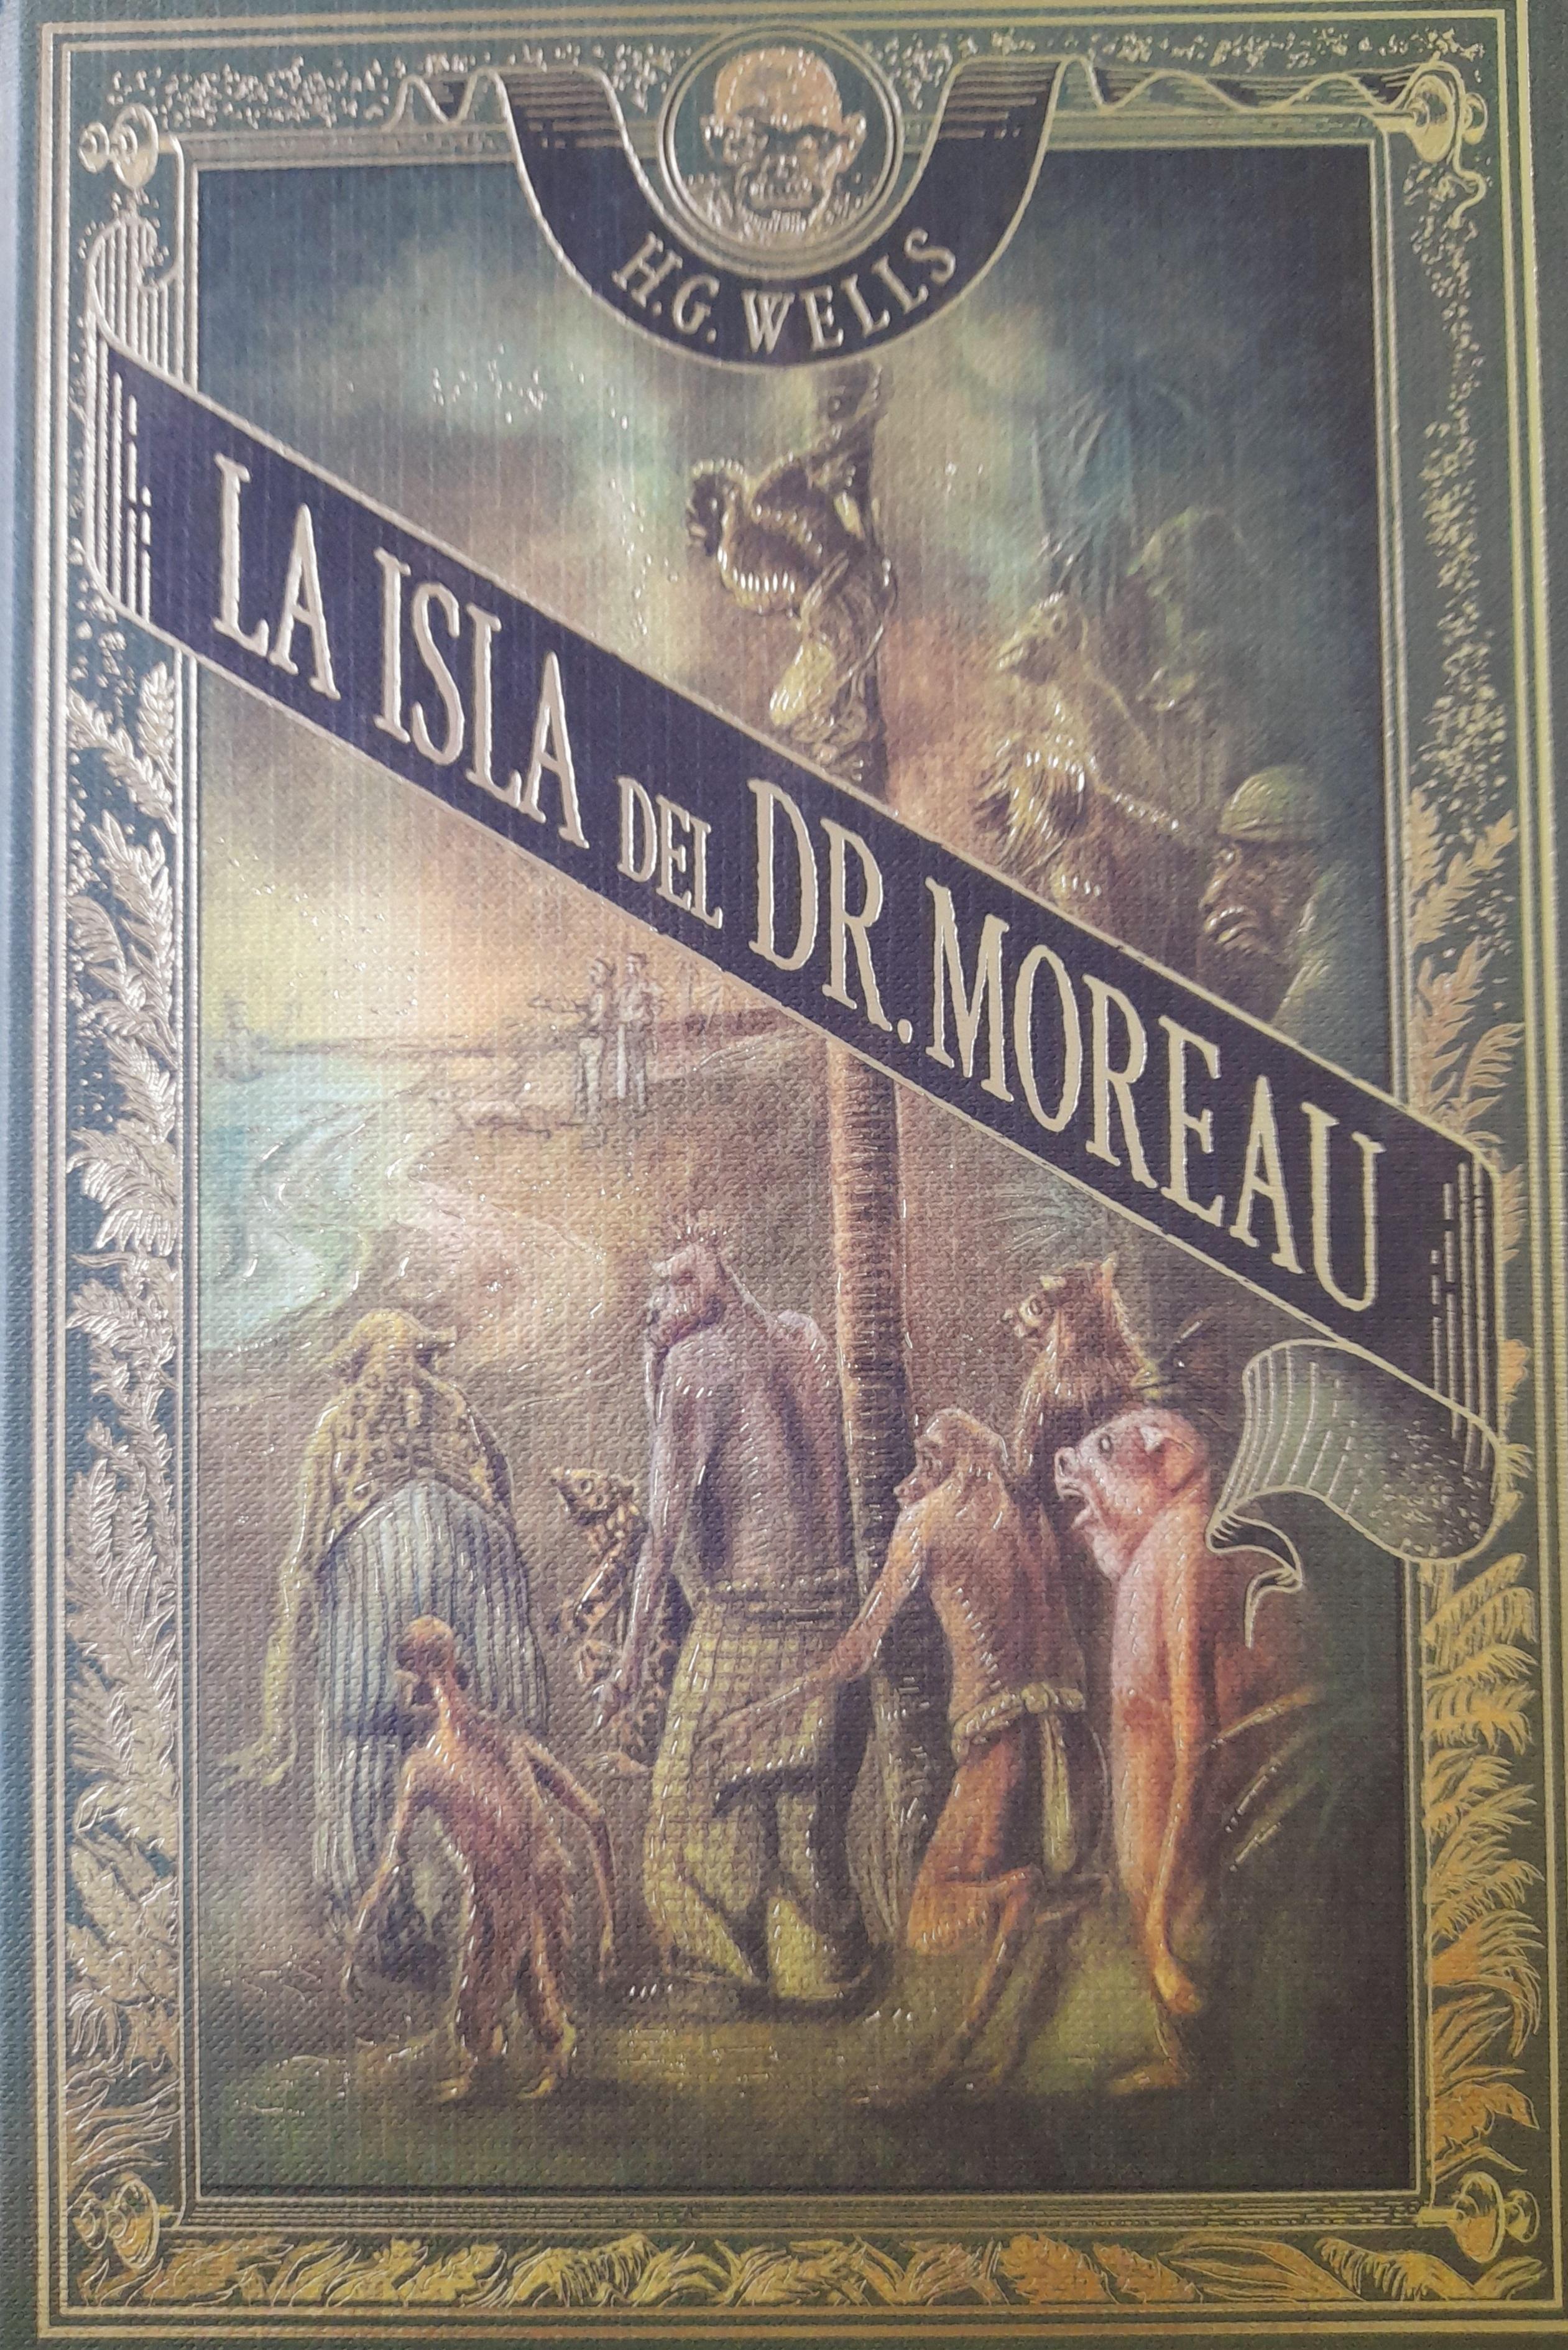 La isla del doctor Moreau